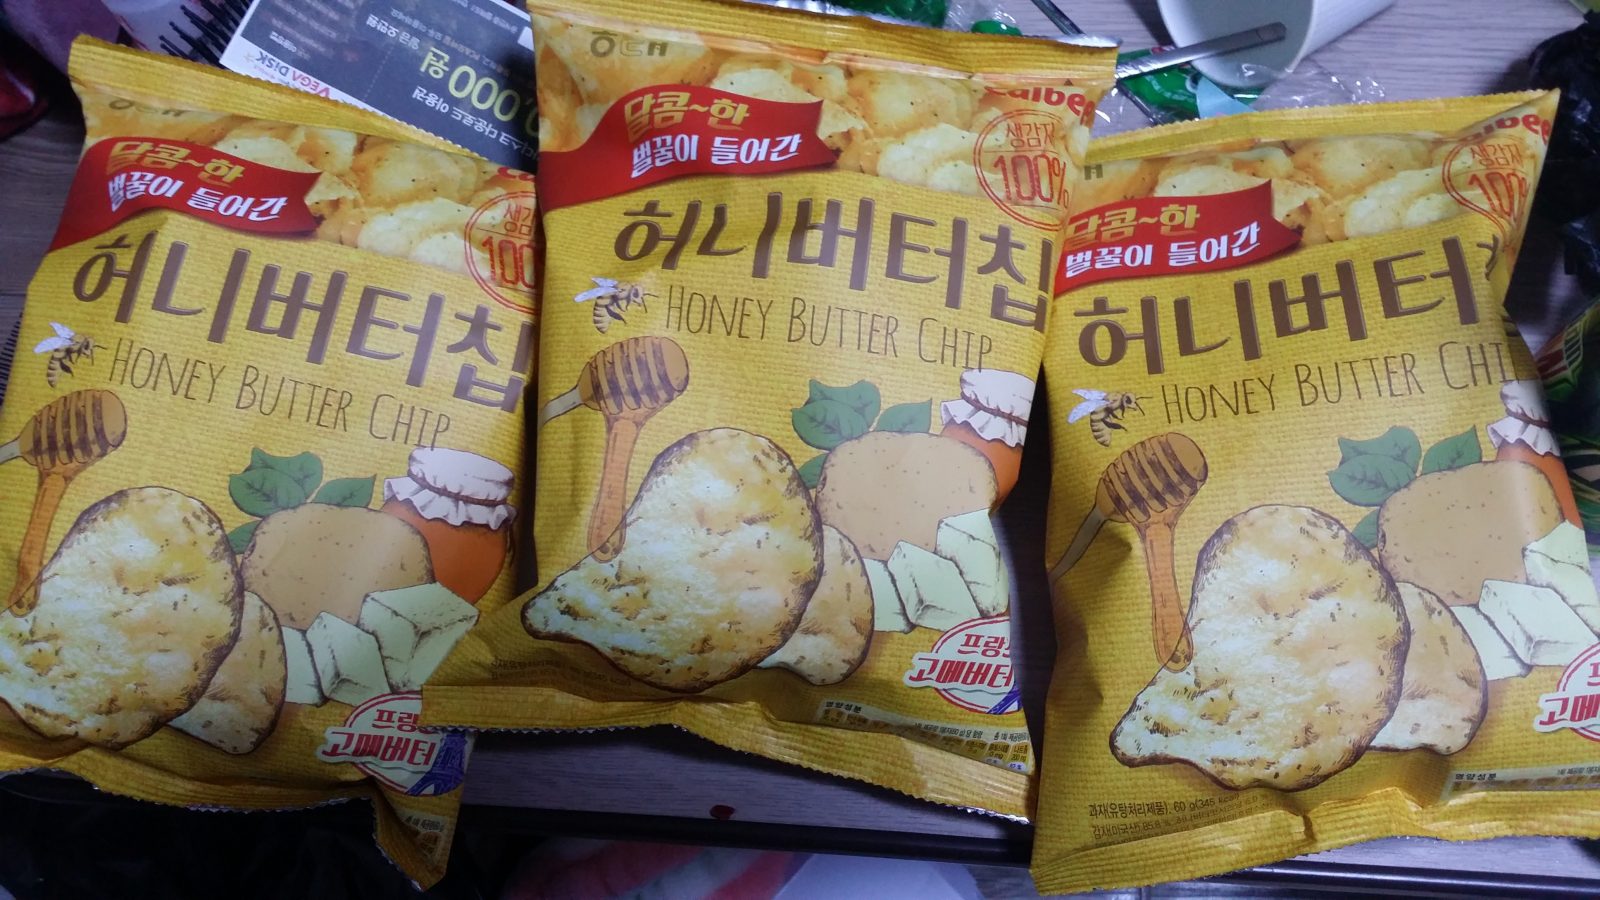 The legendary Honey butter chips